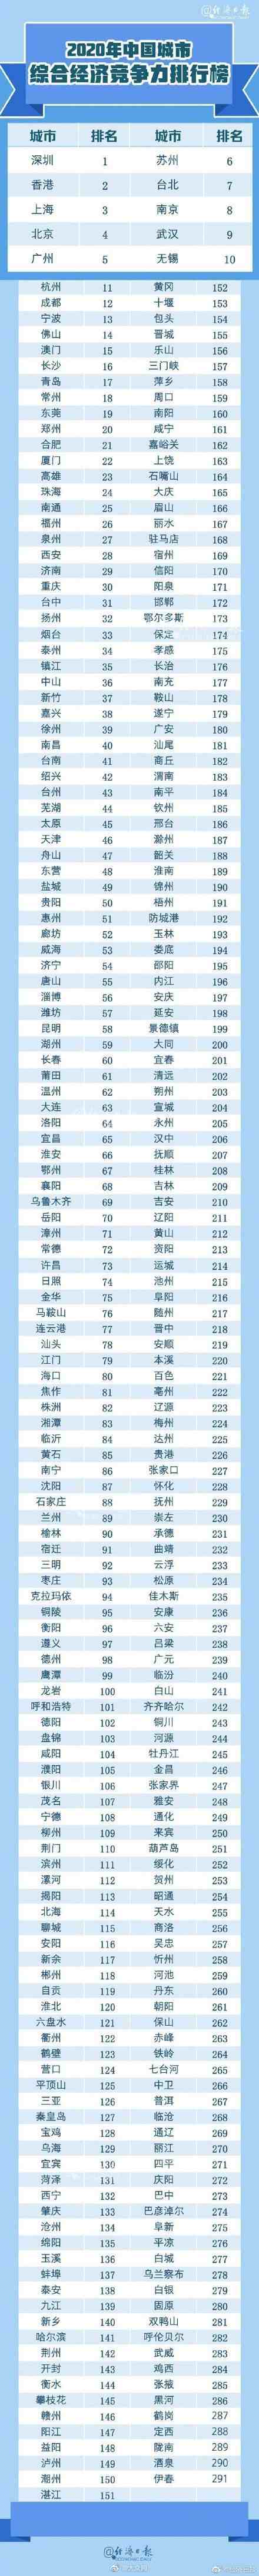 城市竞争力排行榜|中国城市综合经济竞争力排名